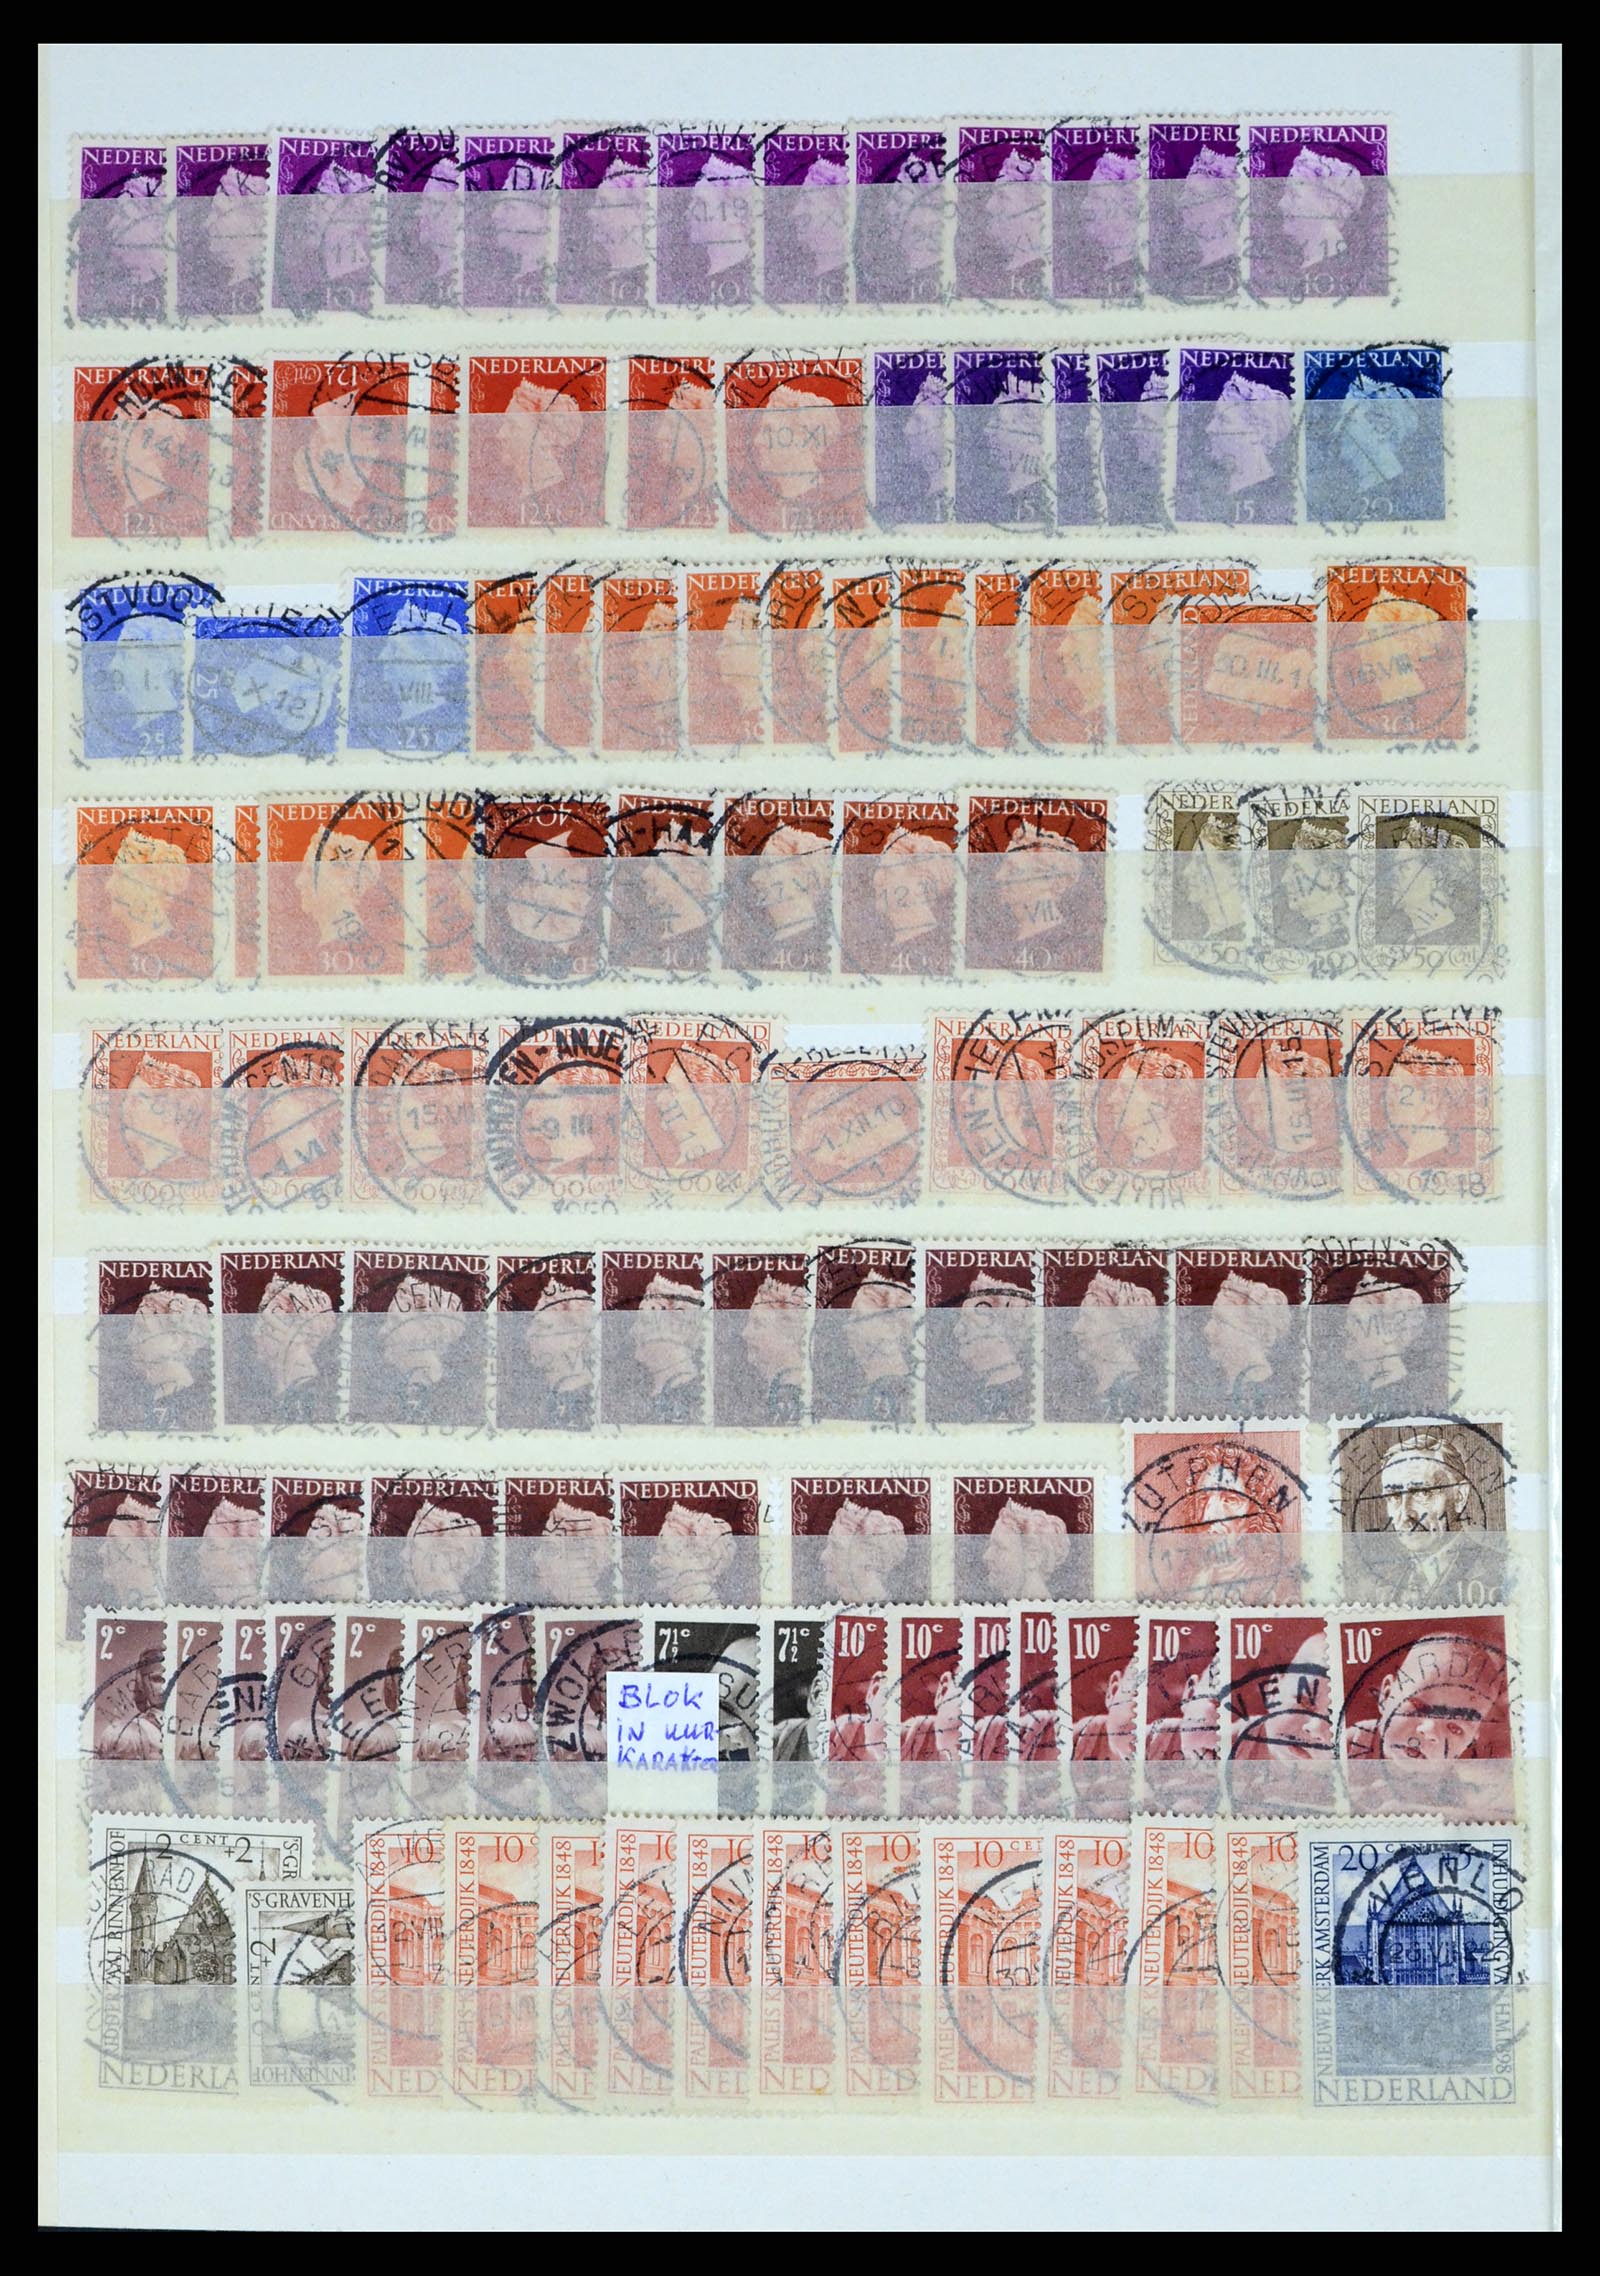 37424 044 - Postzegelverzameling 37424 Nederland kortebalk stempels.